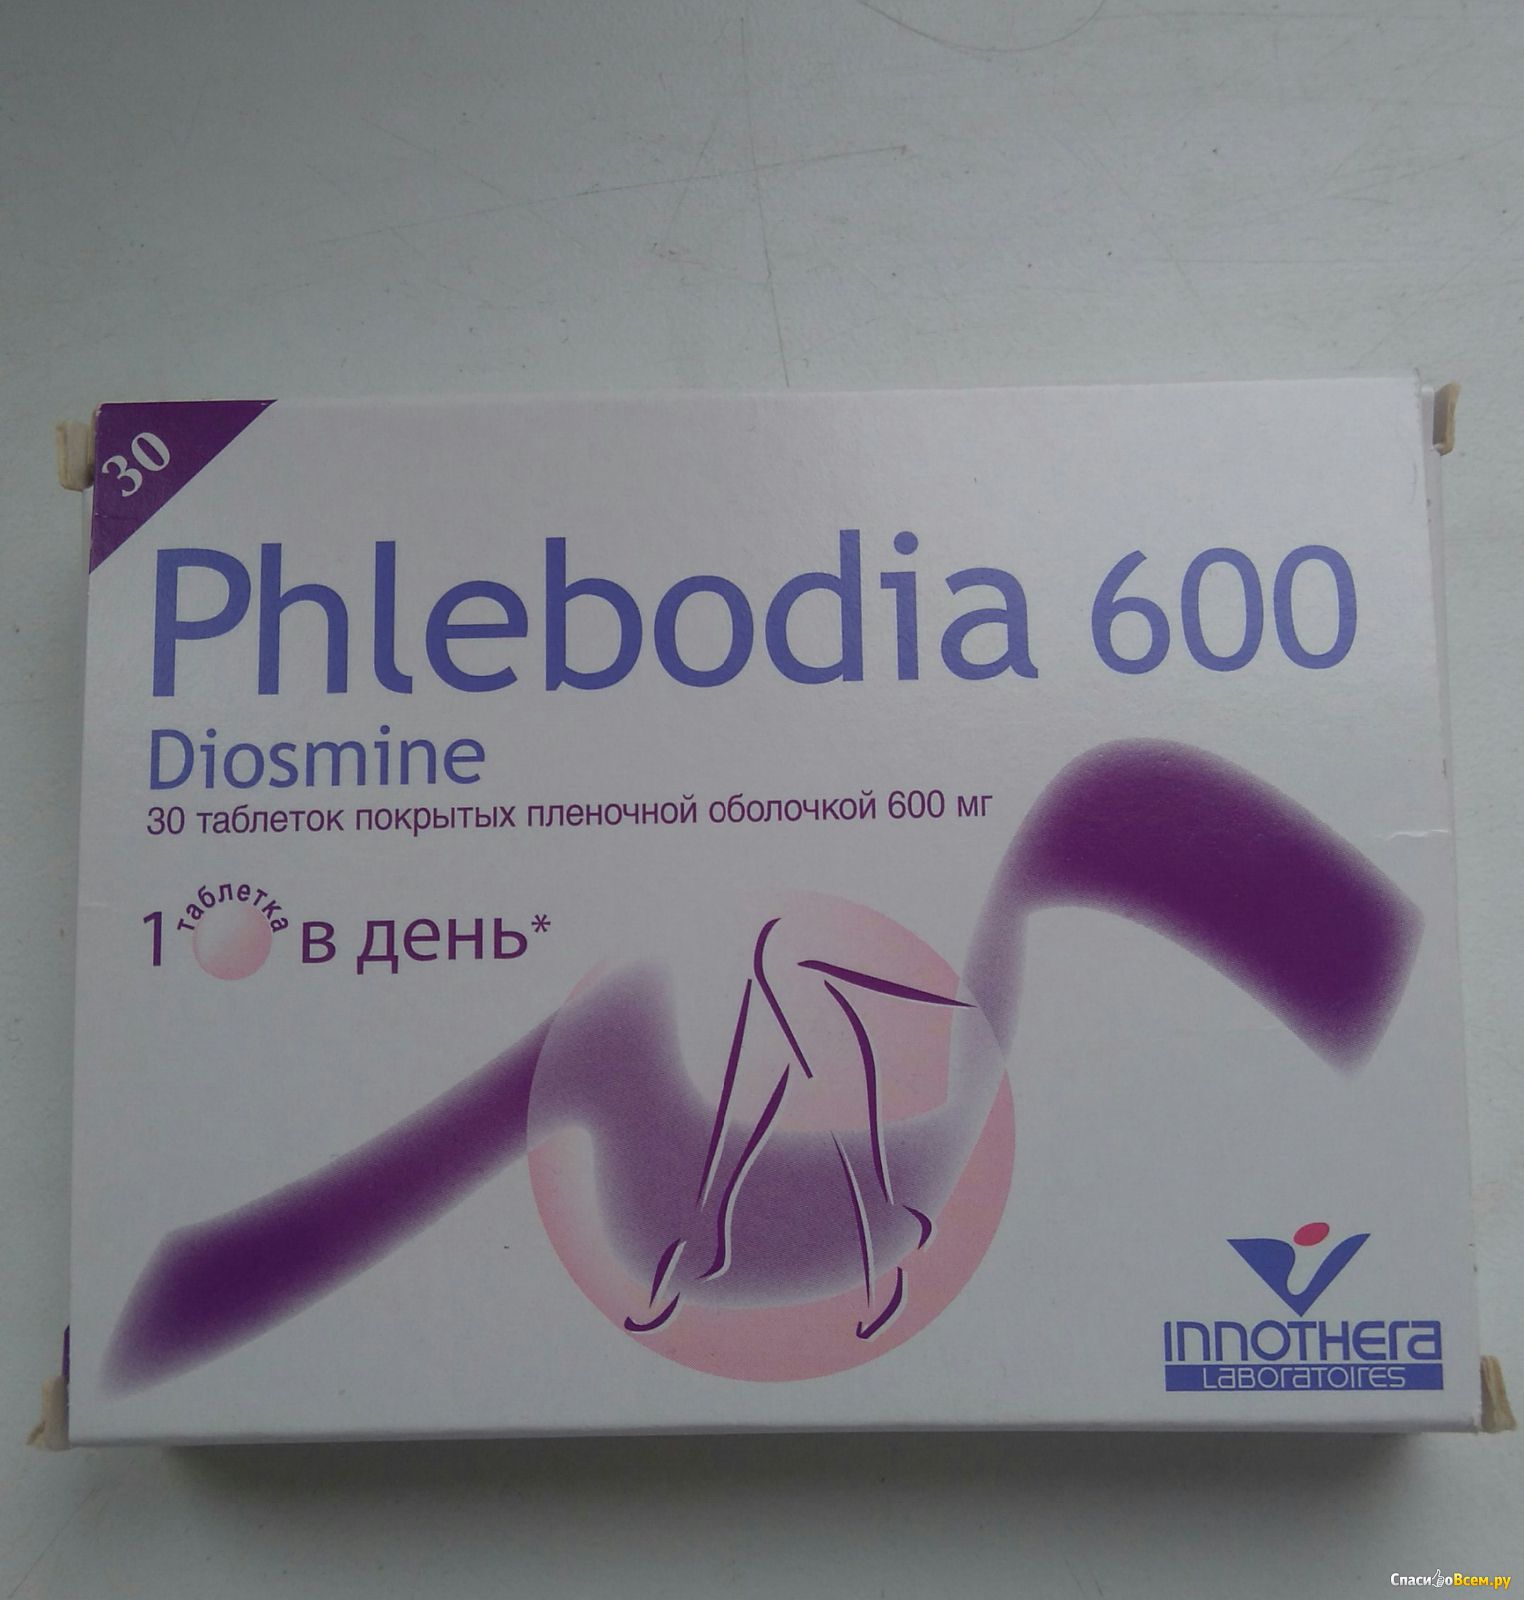 Таблетки Флебодиа 600 Стоимость